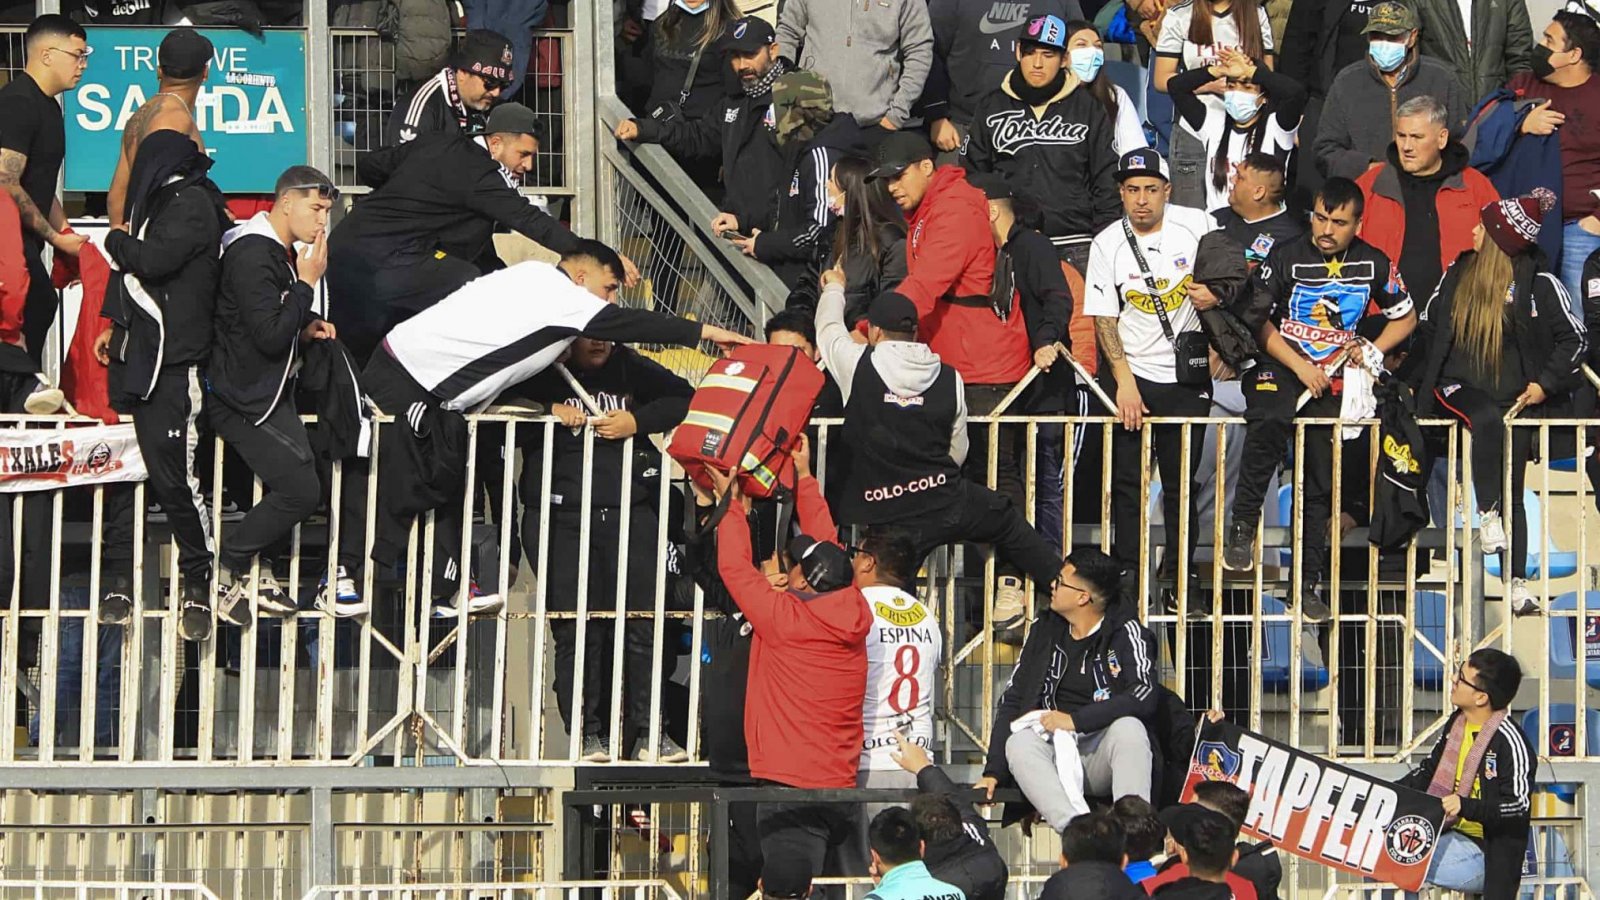 Hinchas de colo colo protagonizando incidentes en Estadio El Teniente de Rancagua